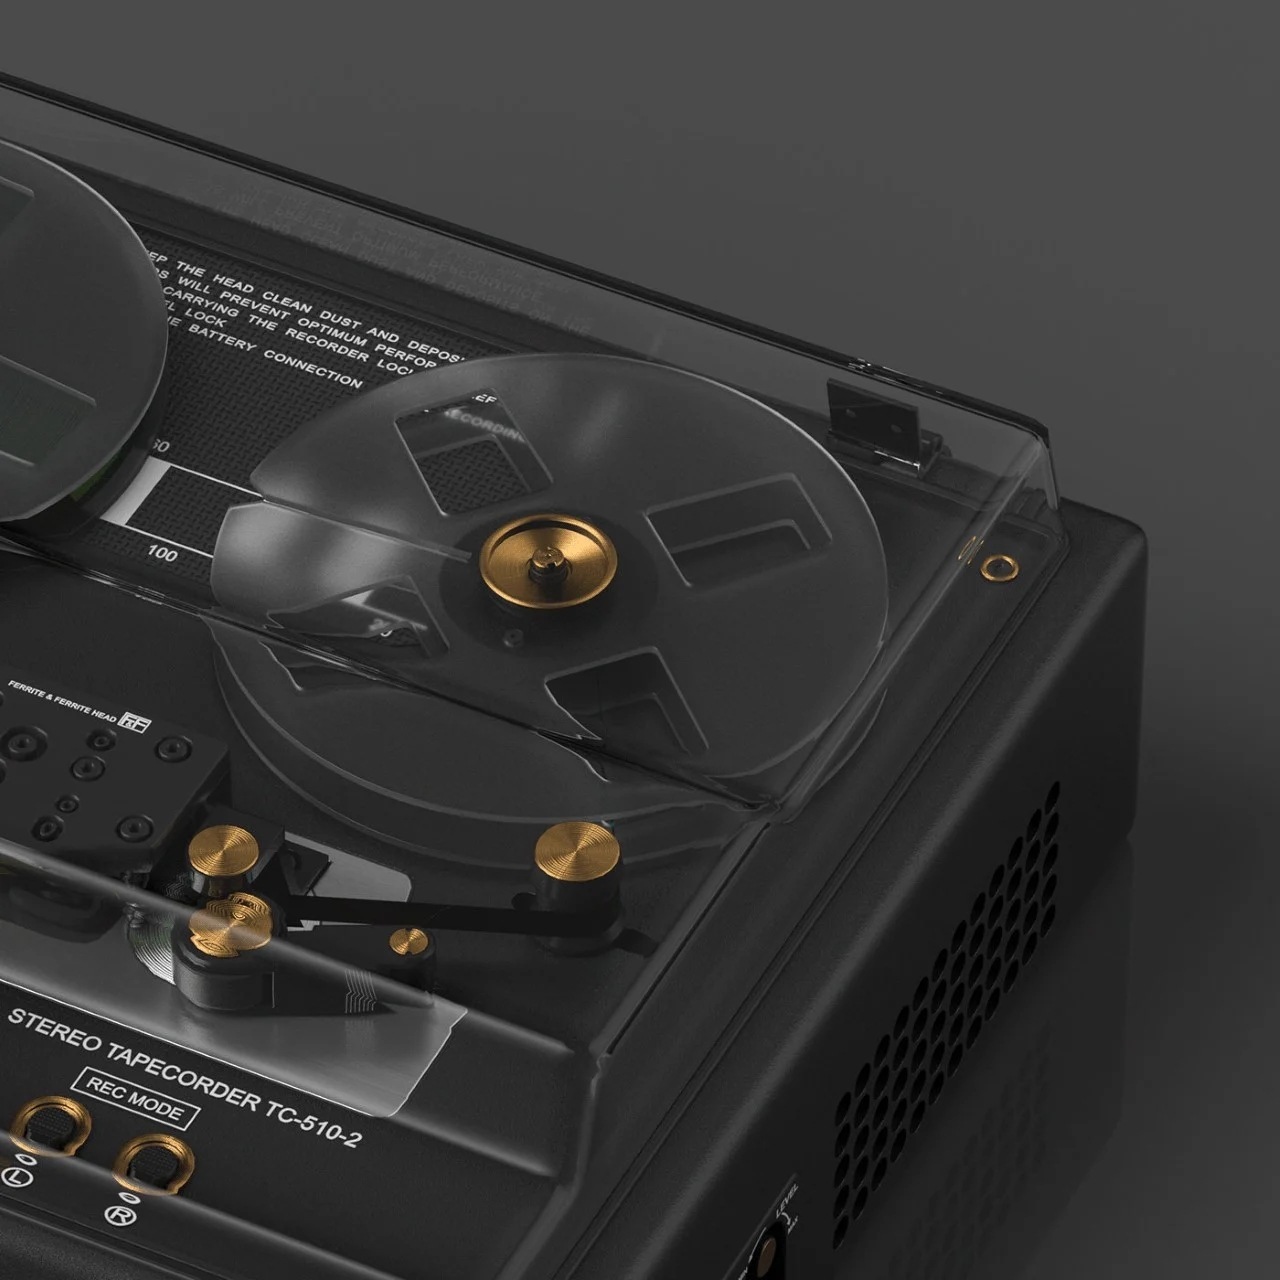 索尼新款TC-510-2录音机采用了新的时髦设计